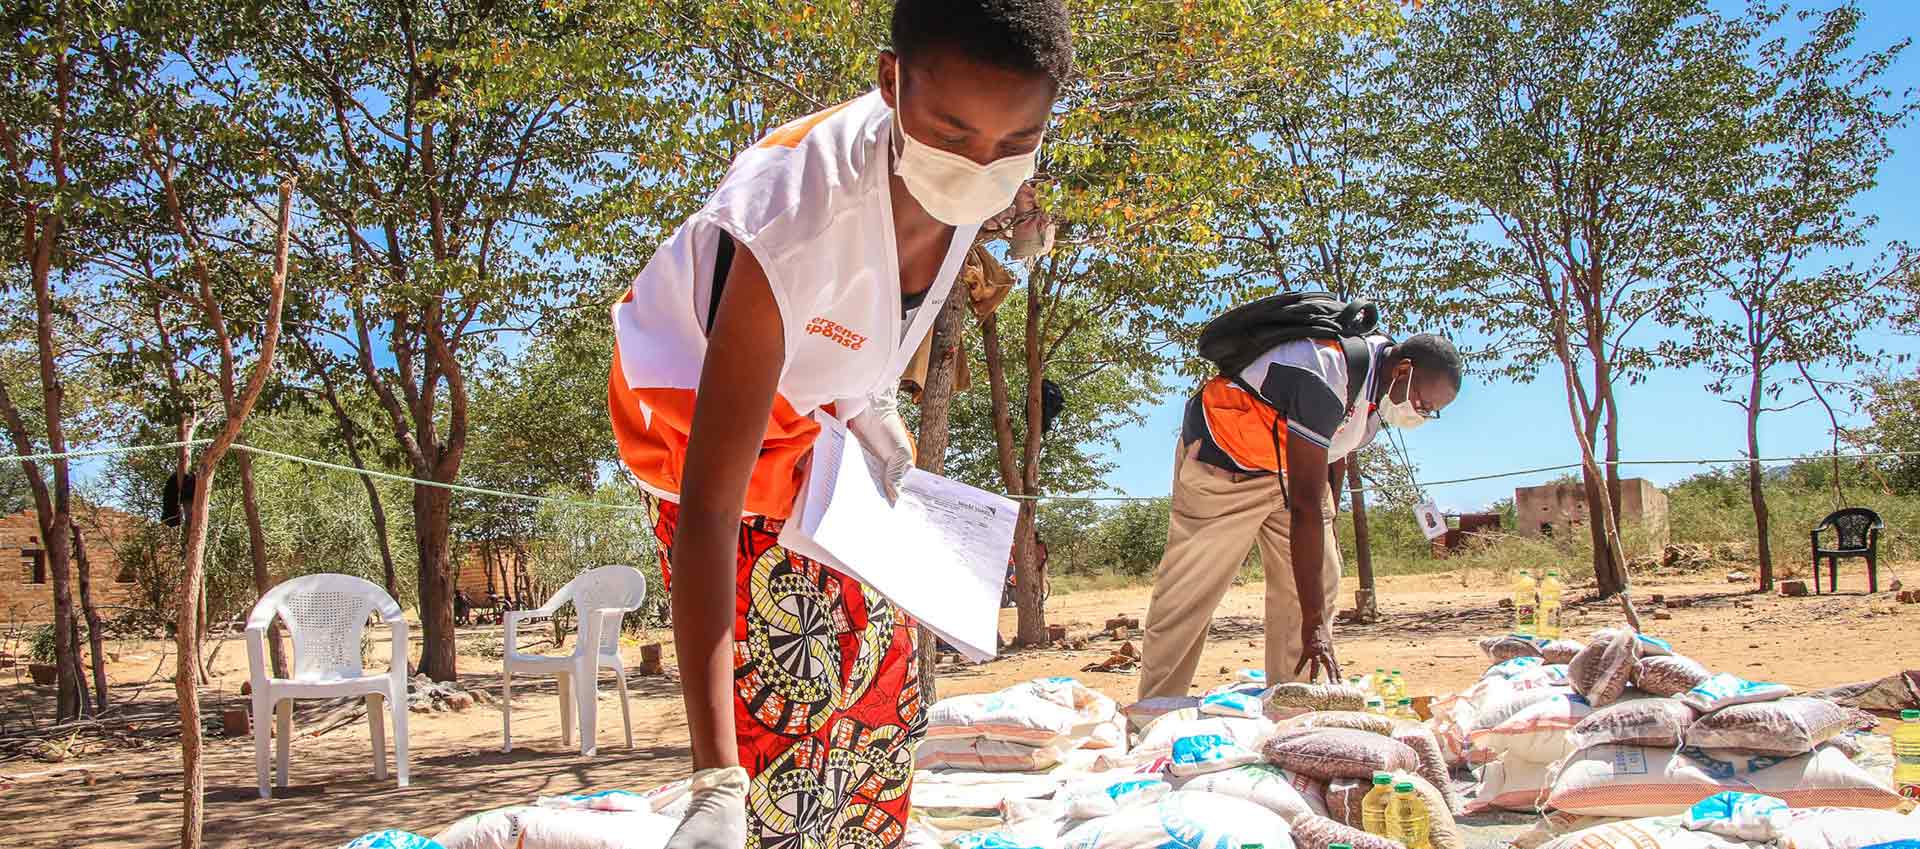 Mitarbeiter mit Maskenschutz bei einer Lebensmittelausgabe in Sambia.